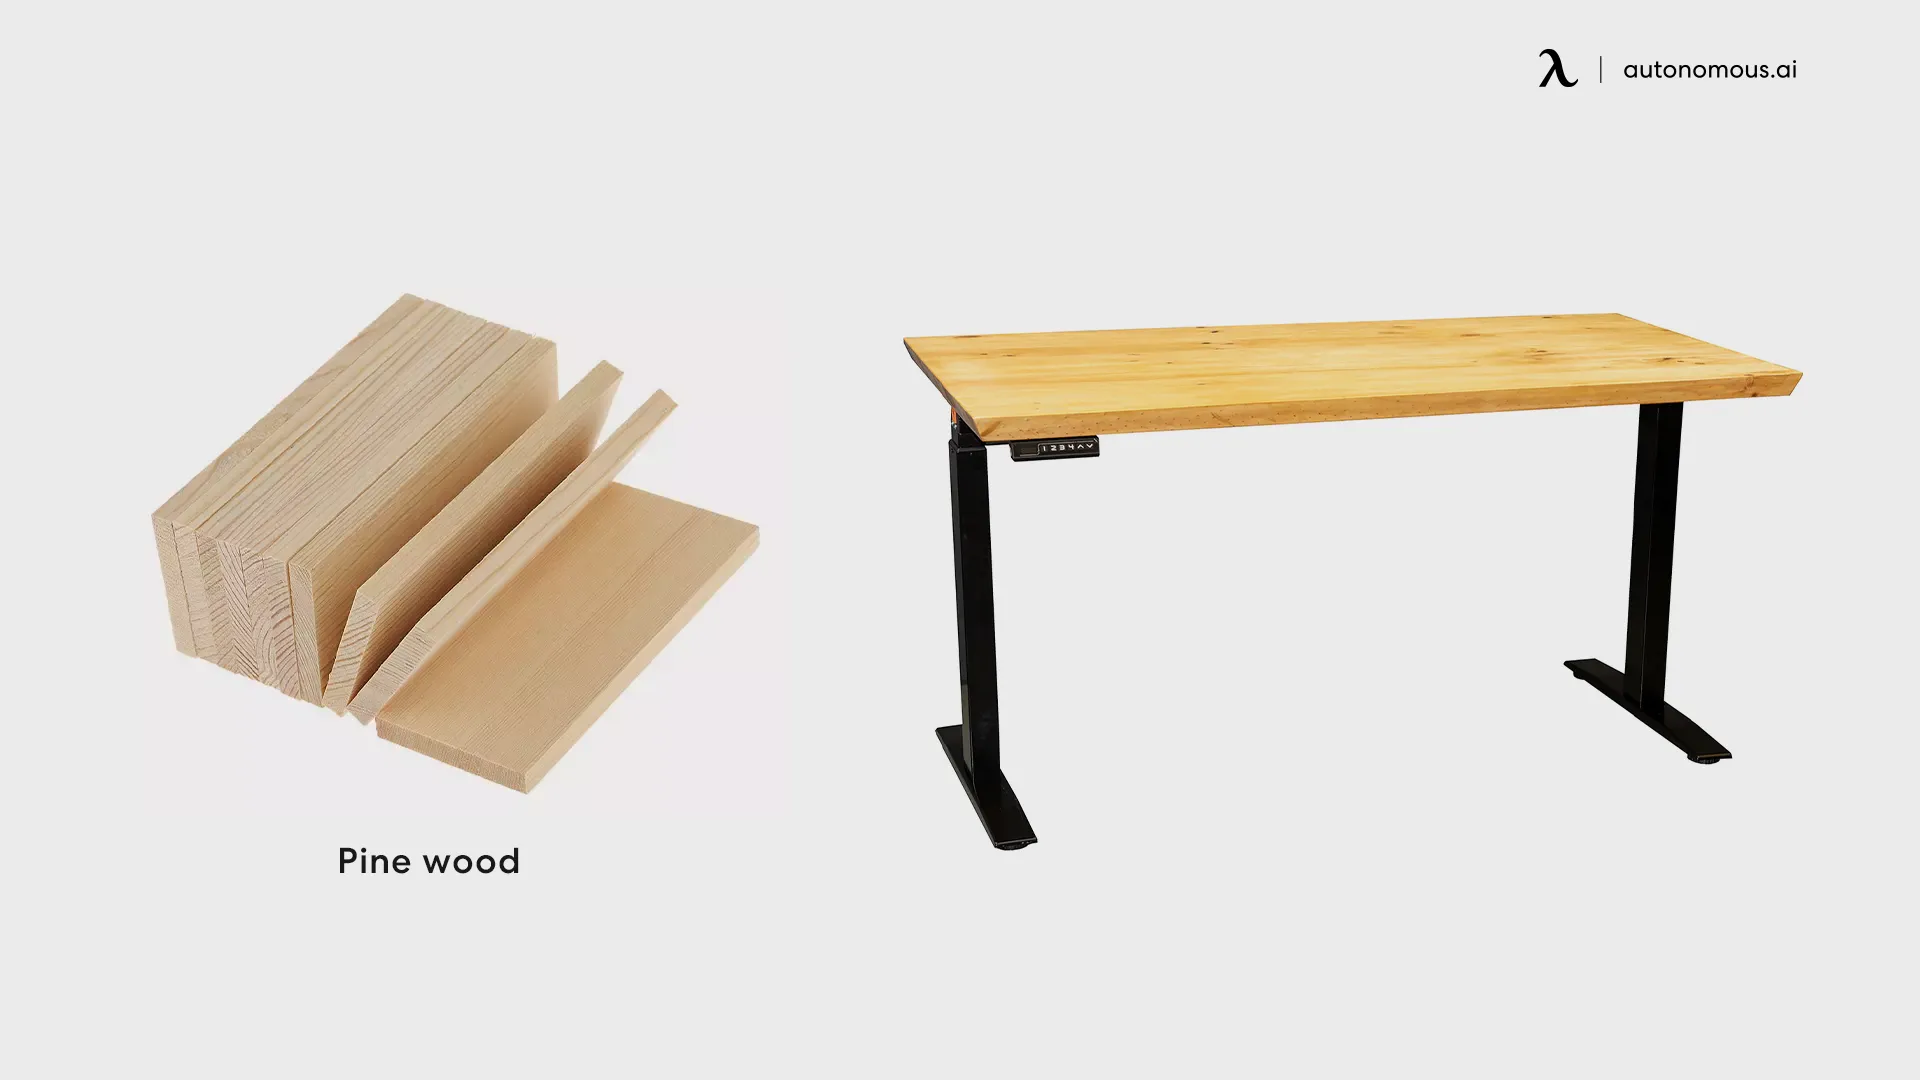 Pine wood standing desk